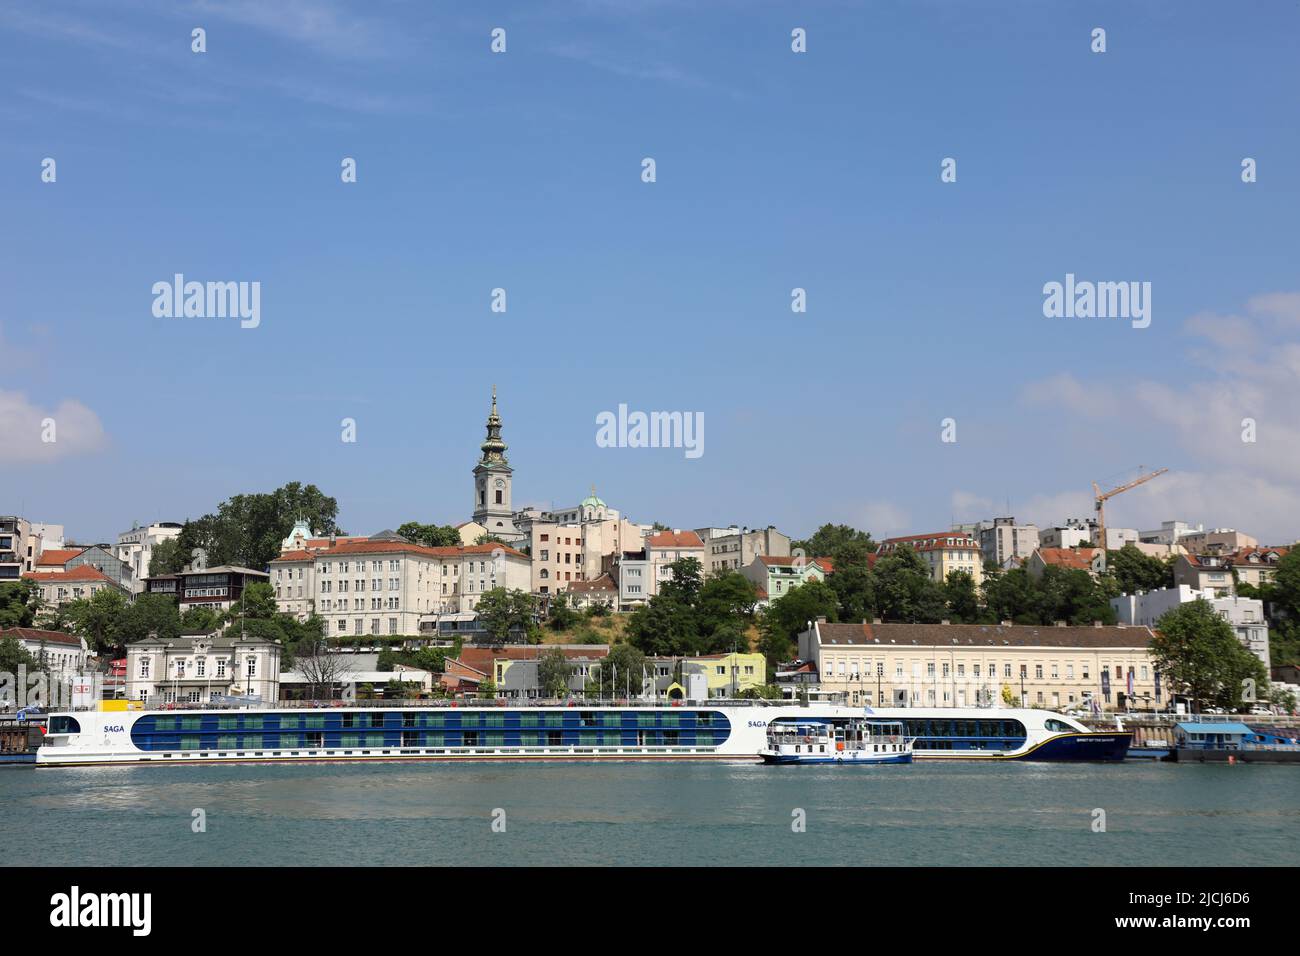 Saga river cruise boat docked in Belgrade Stock Photo